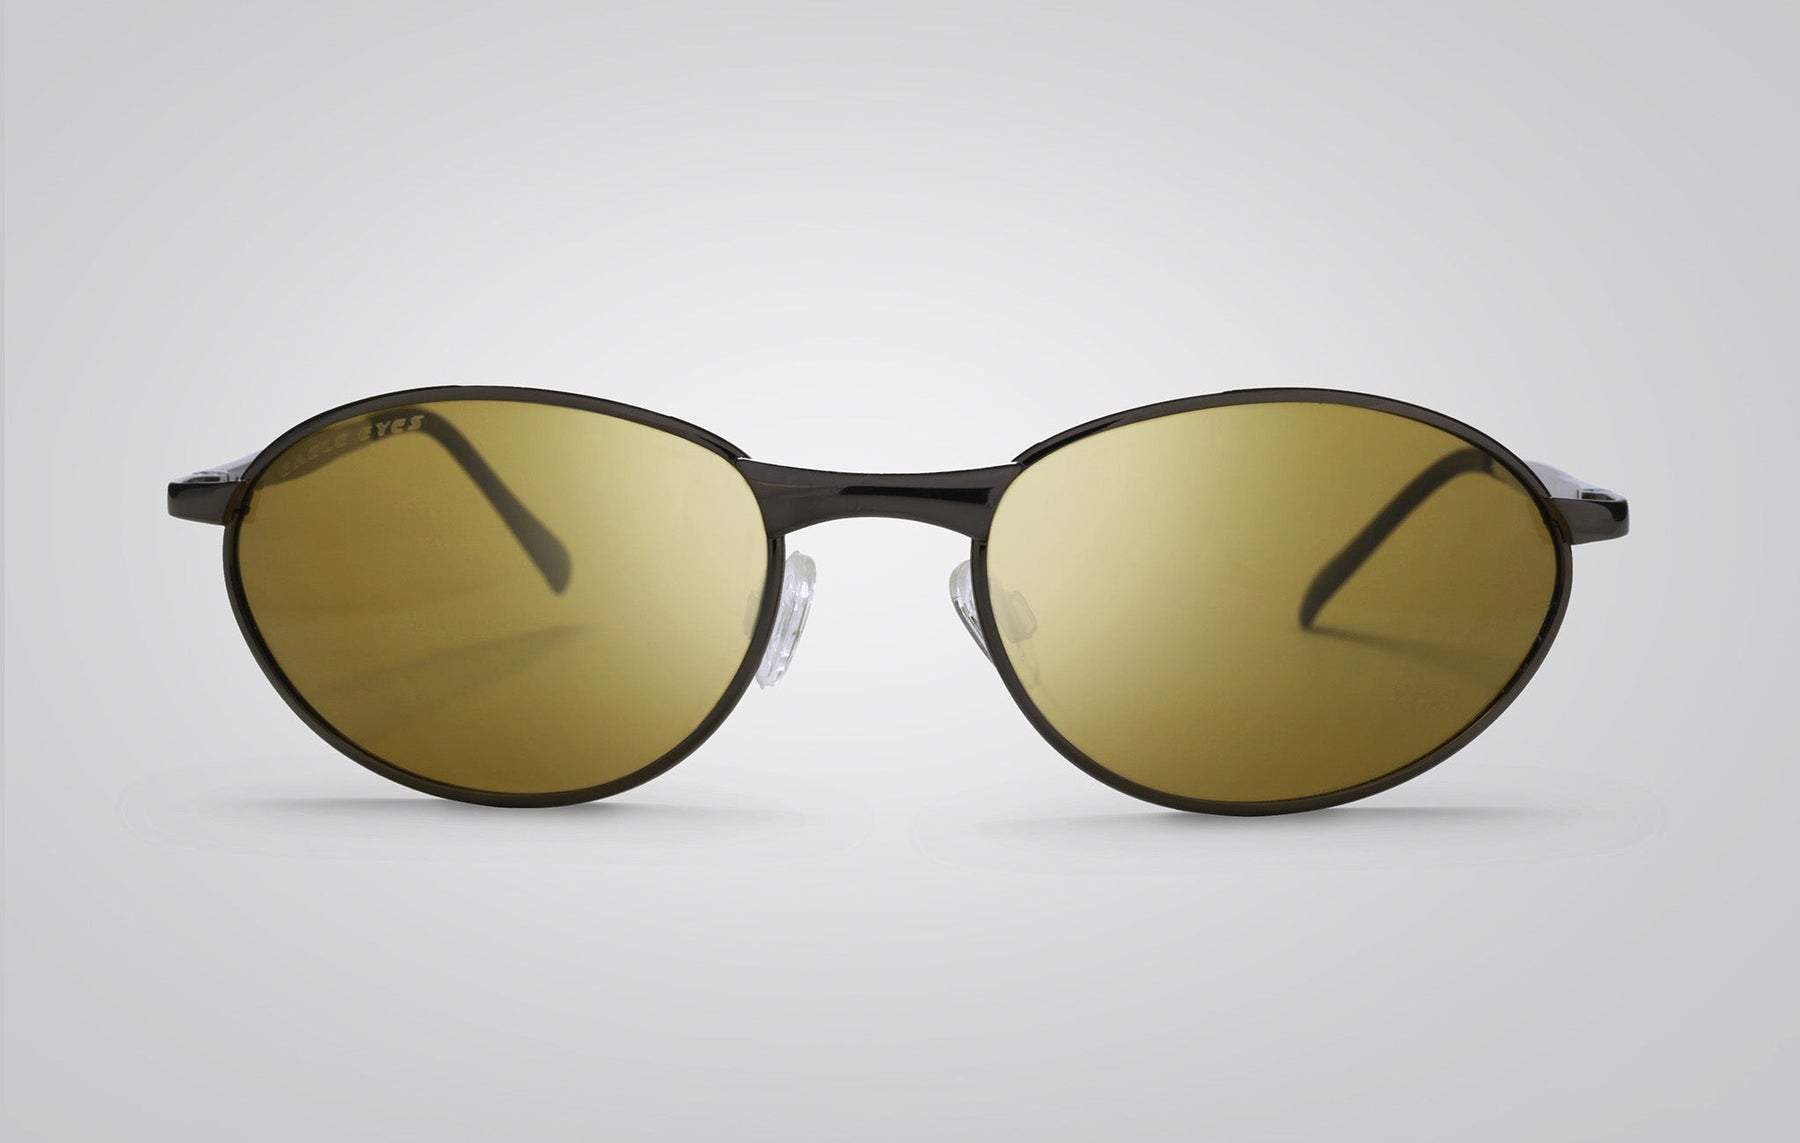 Extreme - Men's Polarized, Blue-Blocking Sunglasses